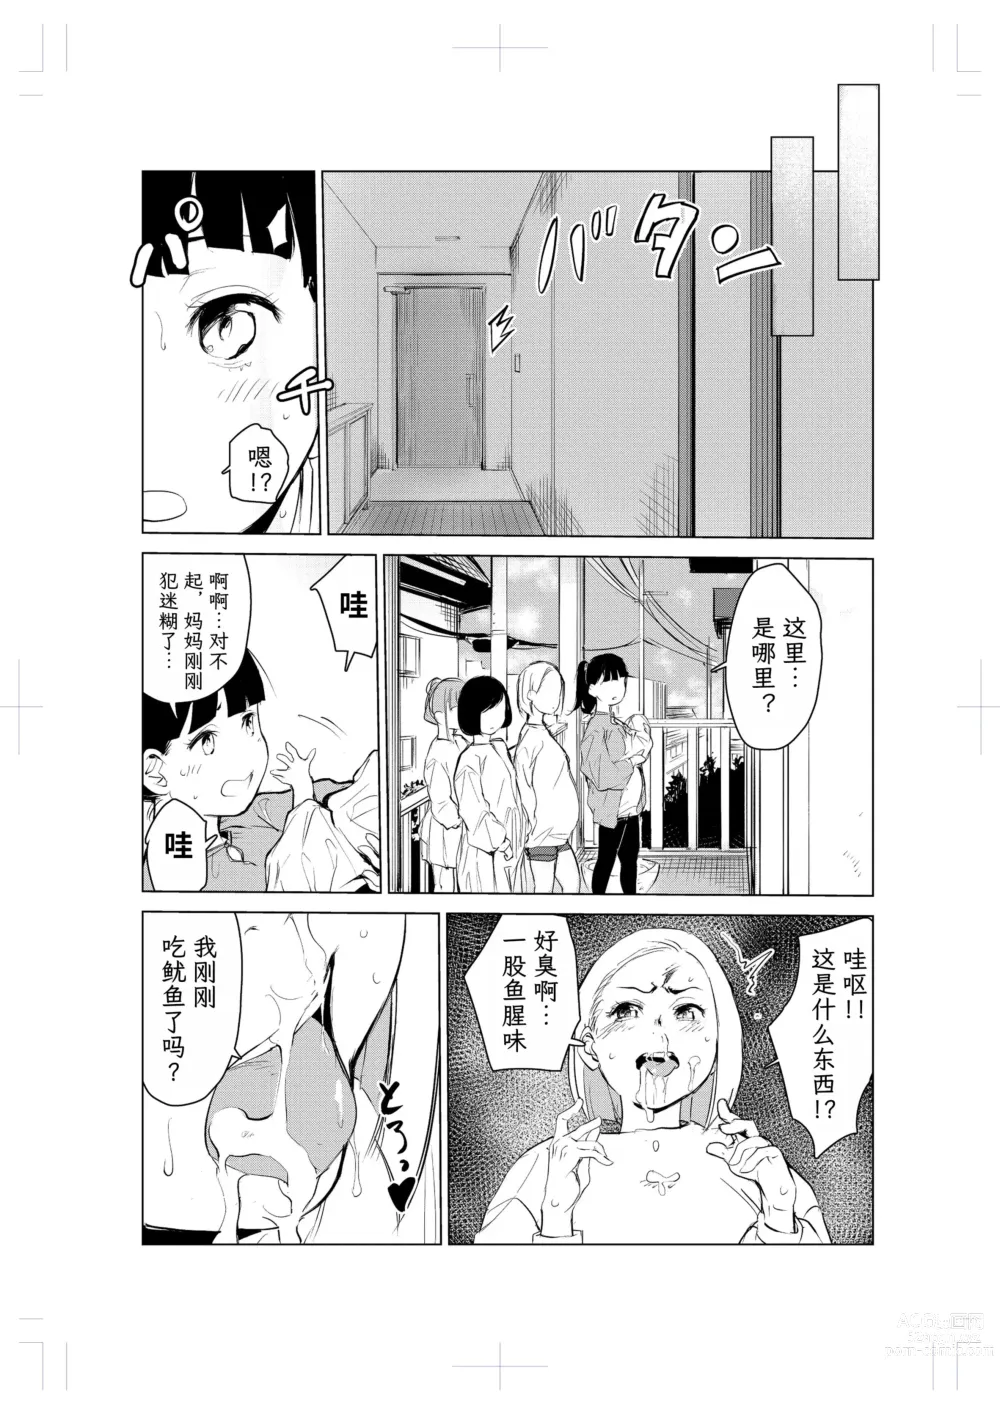 Page 17 of doujinshi 40-sai no Mahoutsukai 2